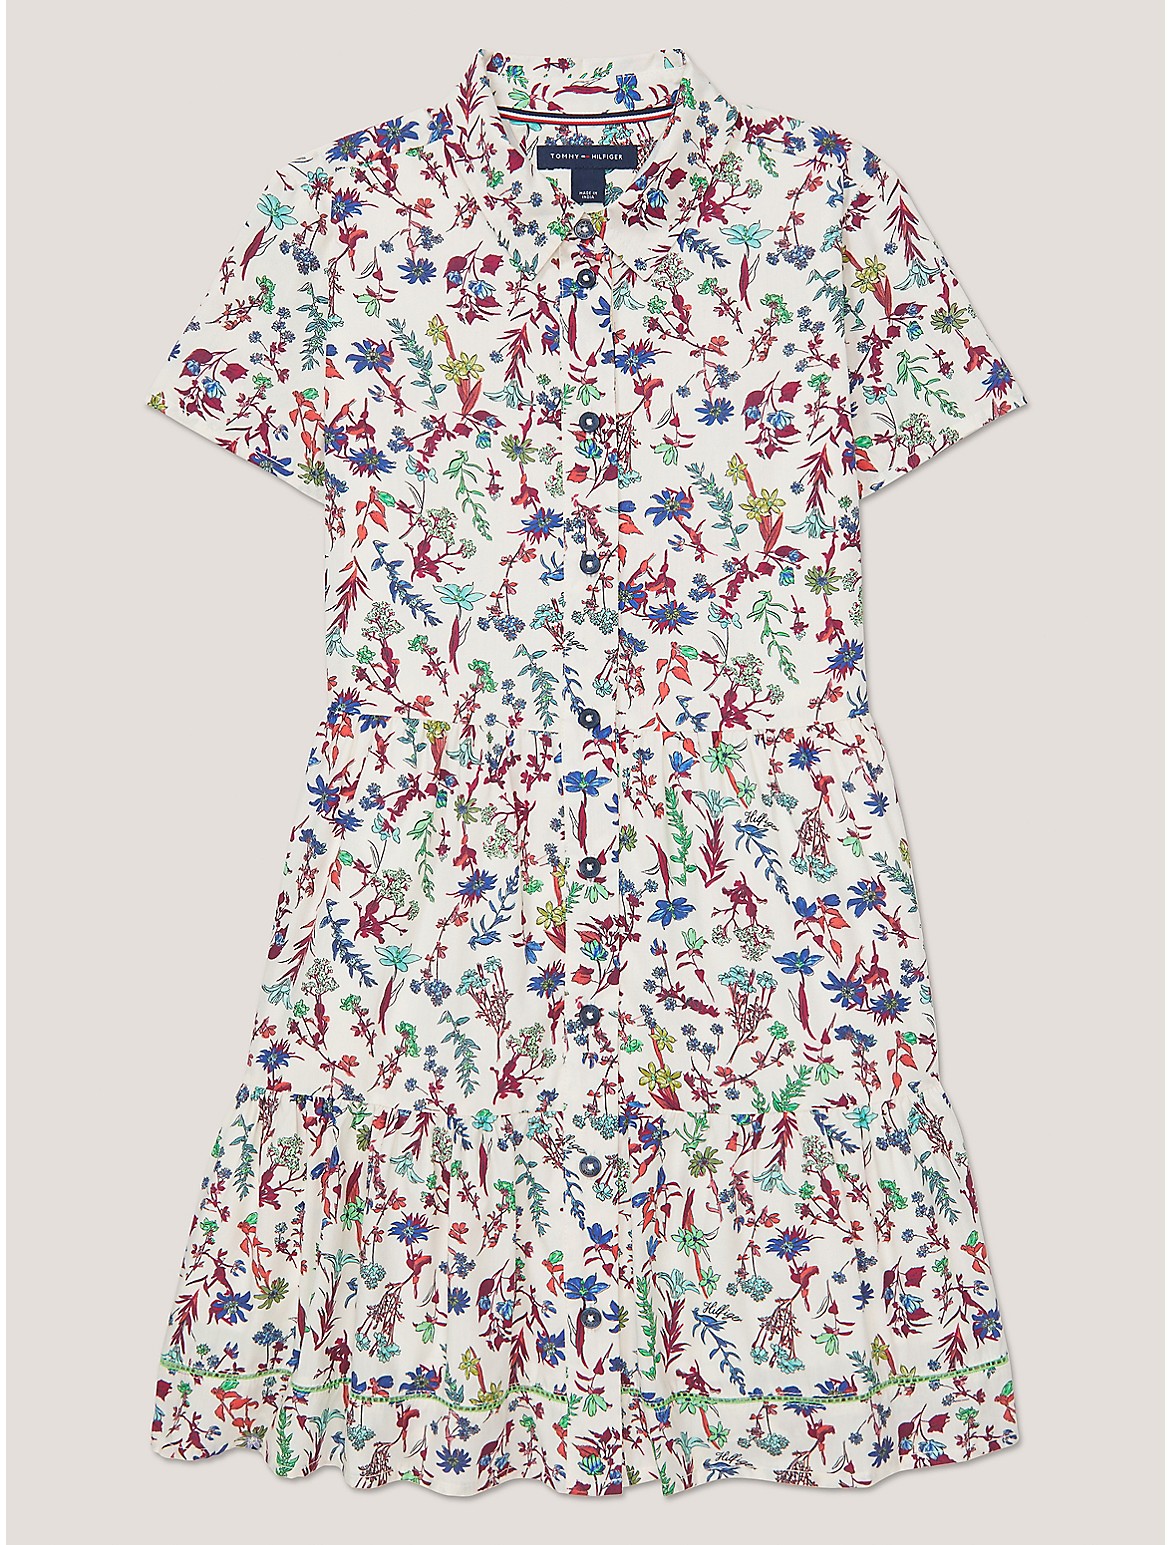 Tommy Hilfiger Girls' Kids' Short-Sleeve Floral Print Dress